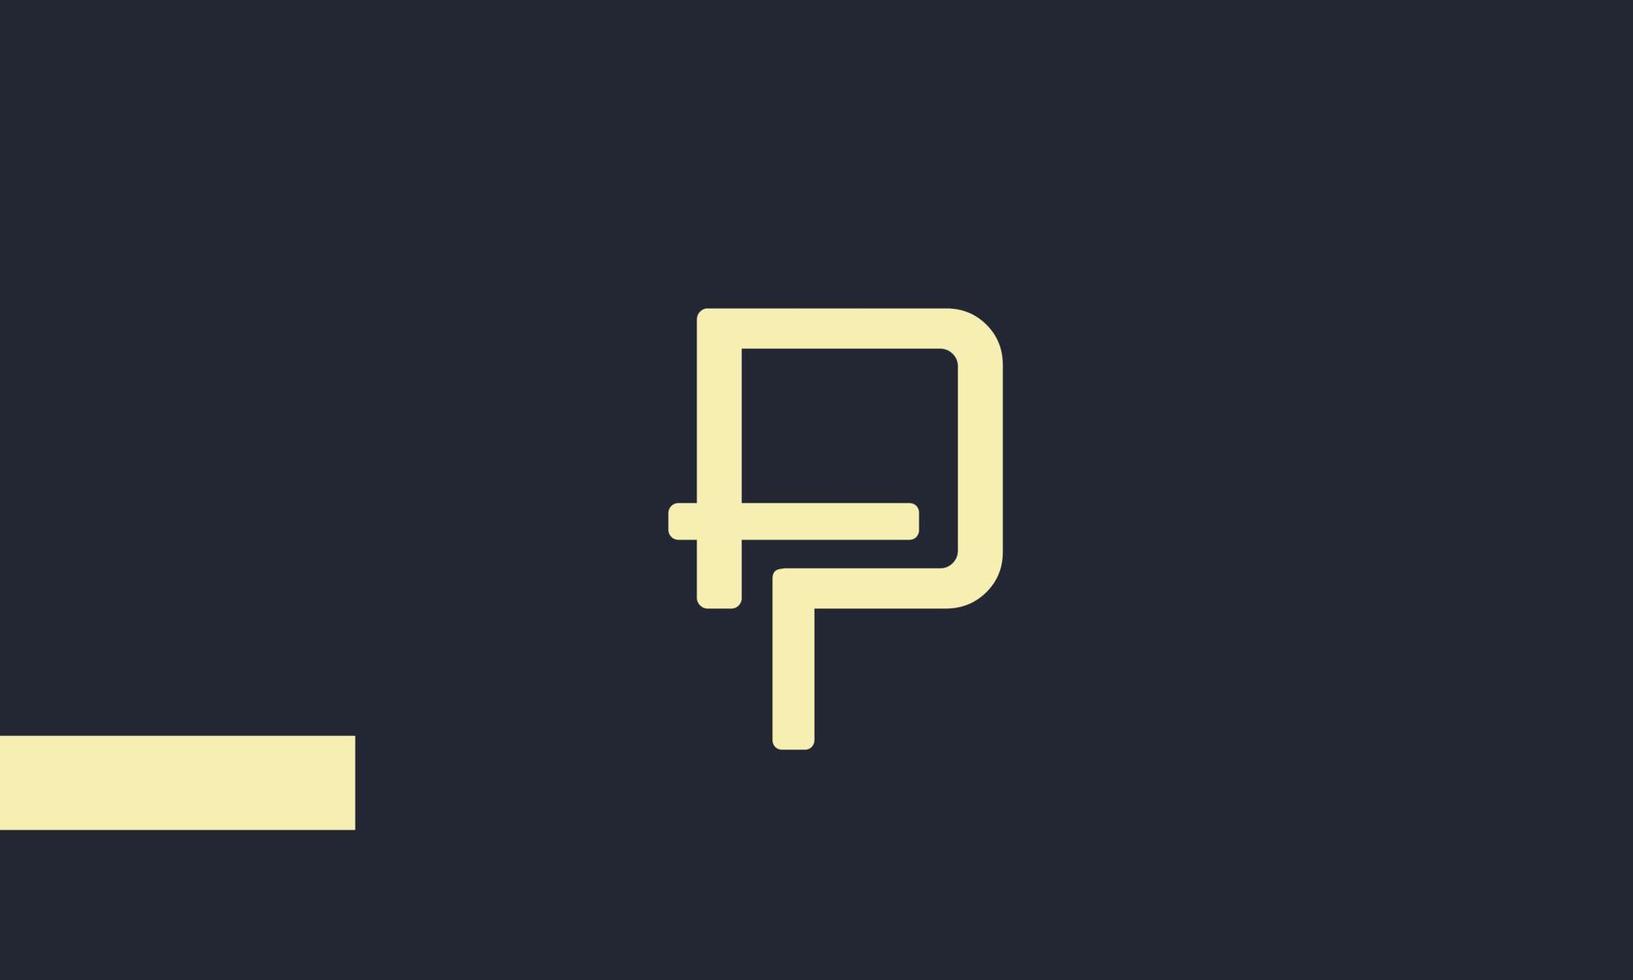 alfabet letters initialen monogram logo fp, pf, f en p vector